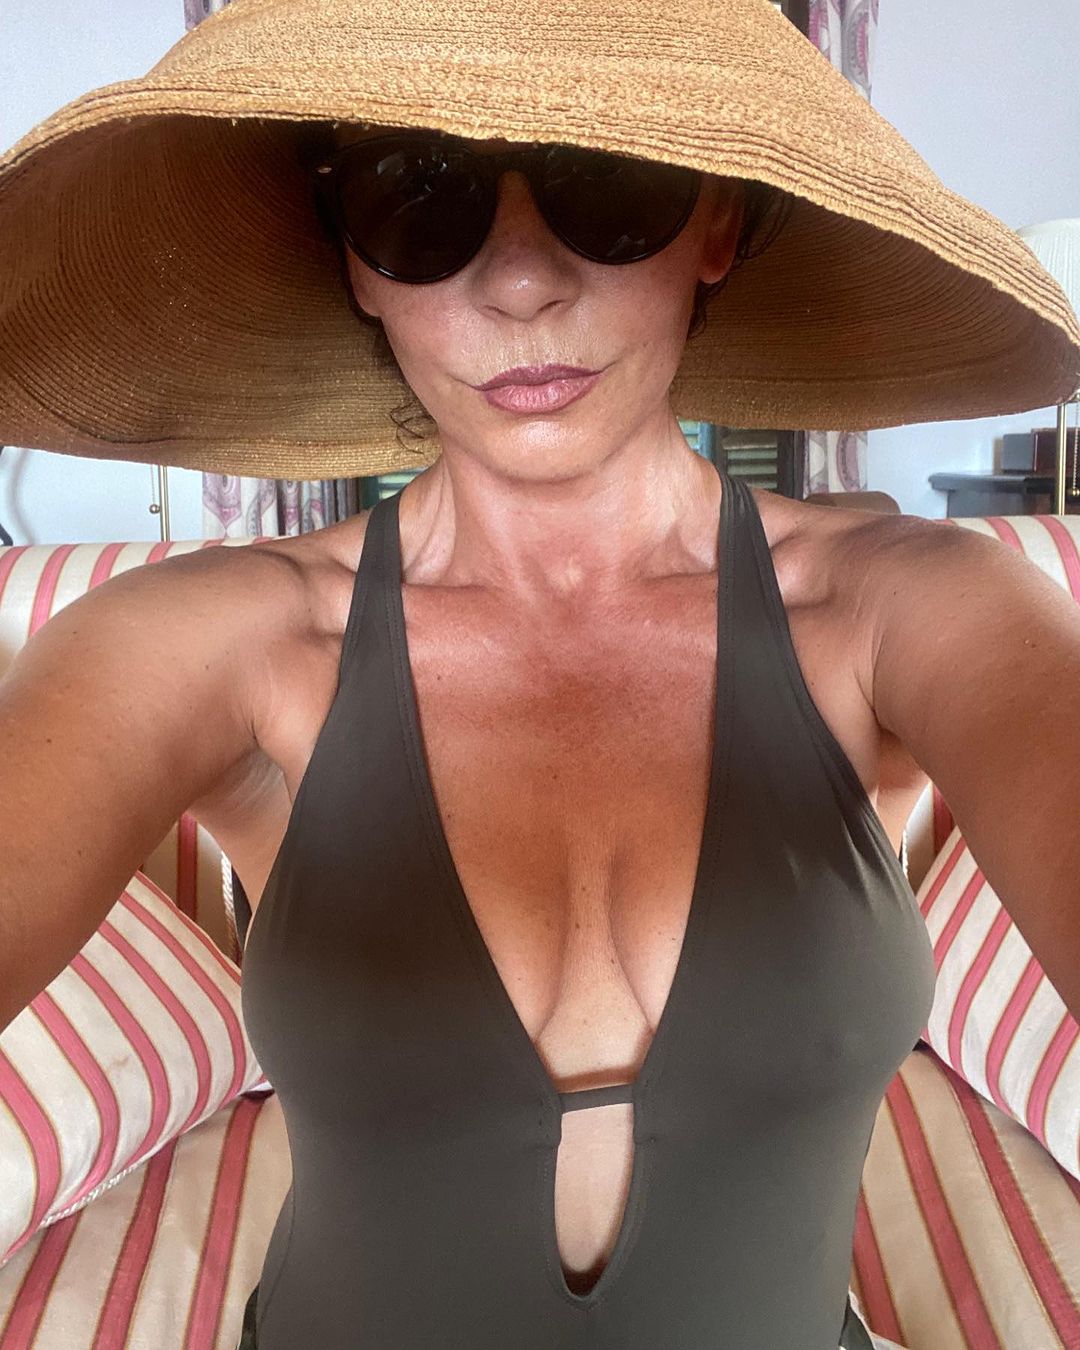 Photos n°2 : Catherine Zeta Jones Selfies in Her Swimsuit!